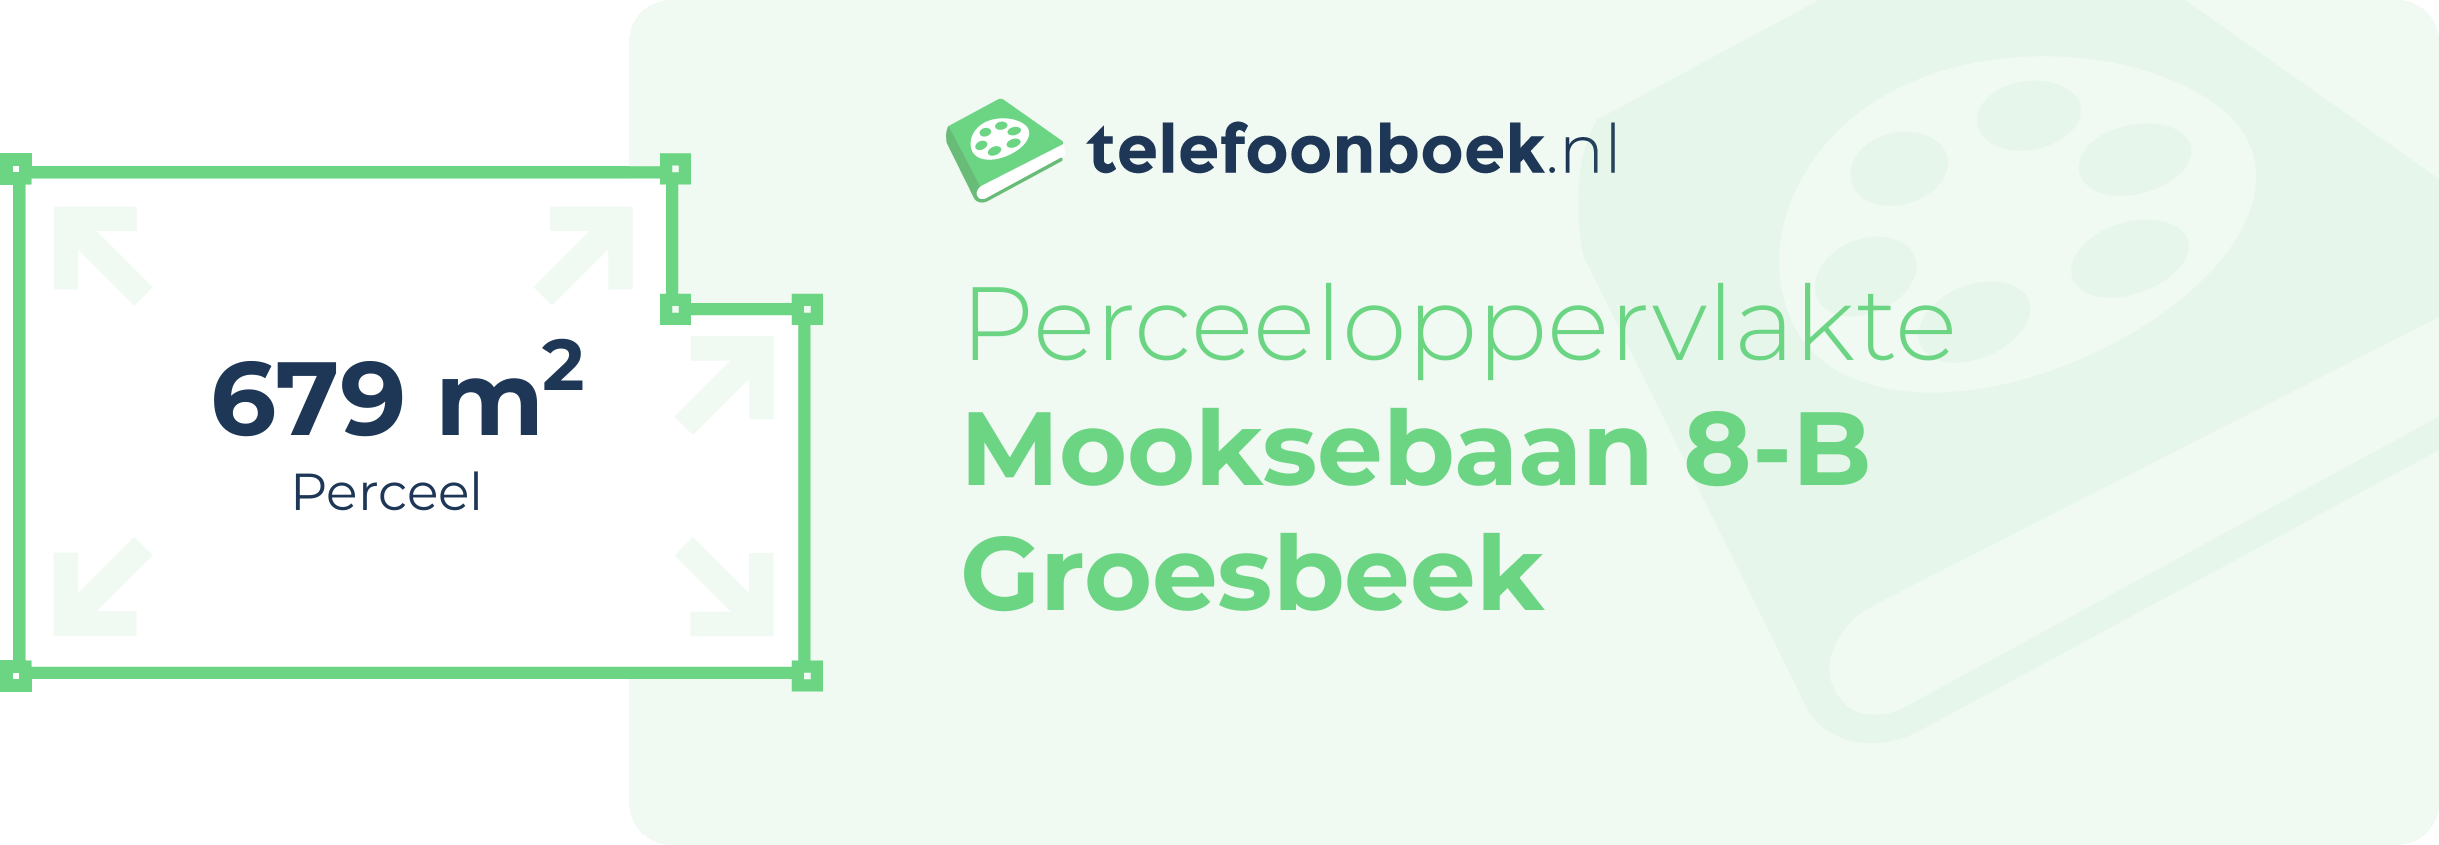 Perceeloppervlakte Mooksebaan 8-B Groesbeek